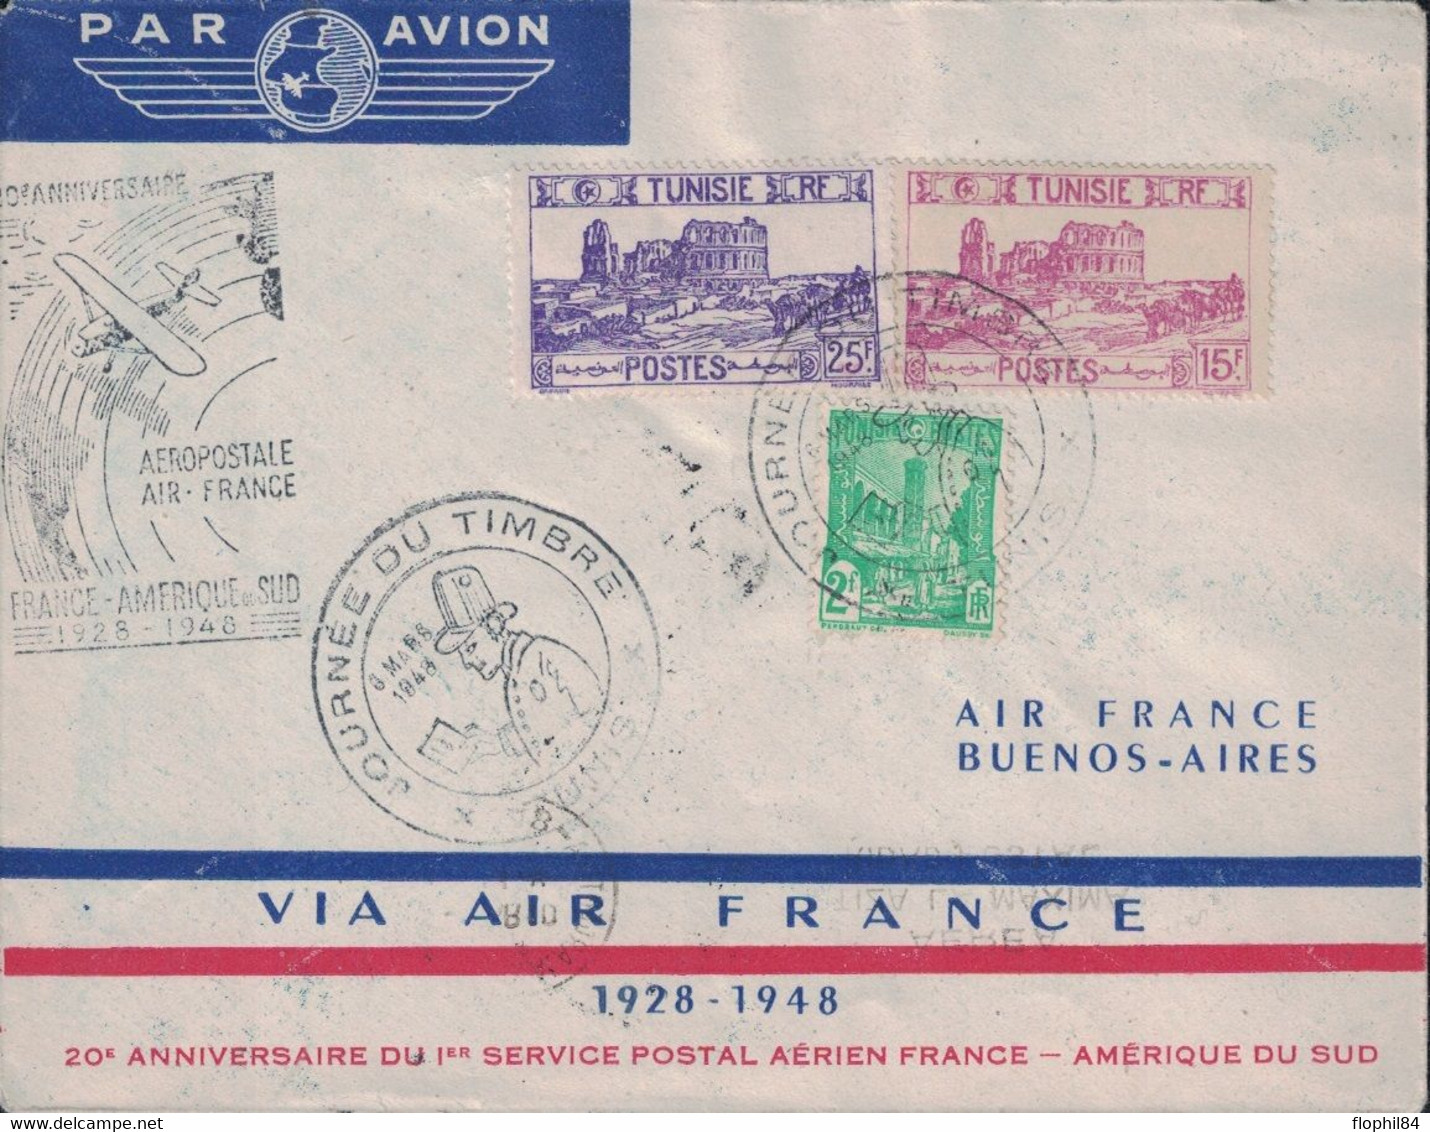 TUNISIE - TUNIS - ENVELOPPE AIR FRANCE - LIAISON FRANCE AMERIQUE DU SUD - 1929 EN 8 JOURS - 1948 EN 30 HEURES - CACHET S - Luftpost